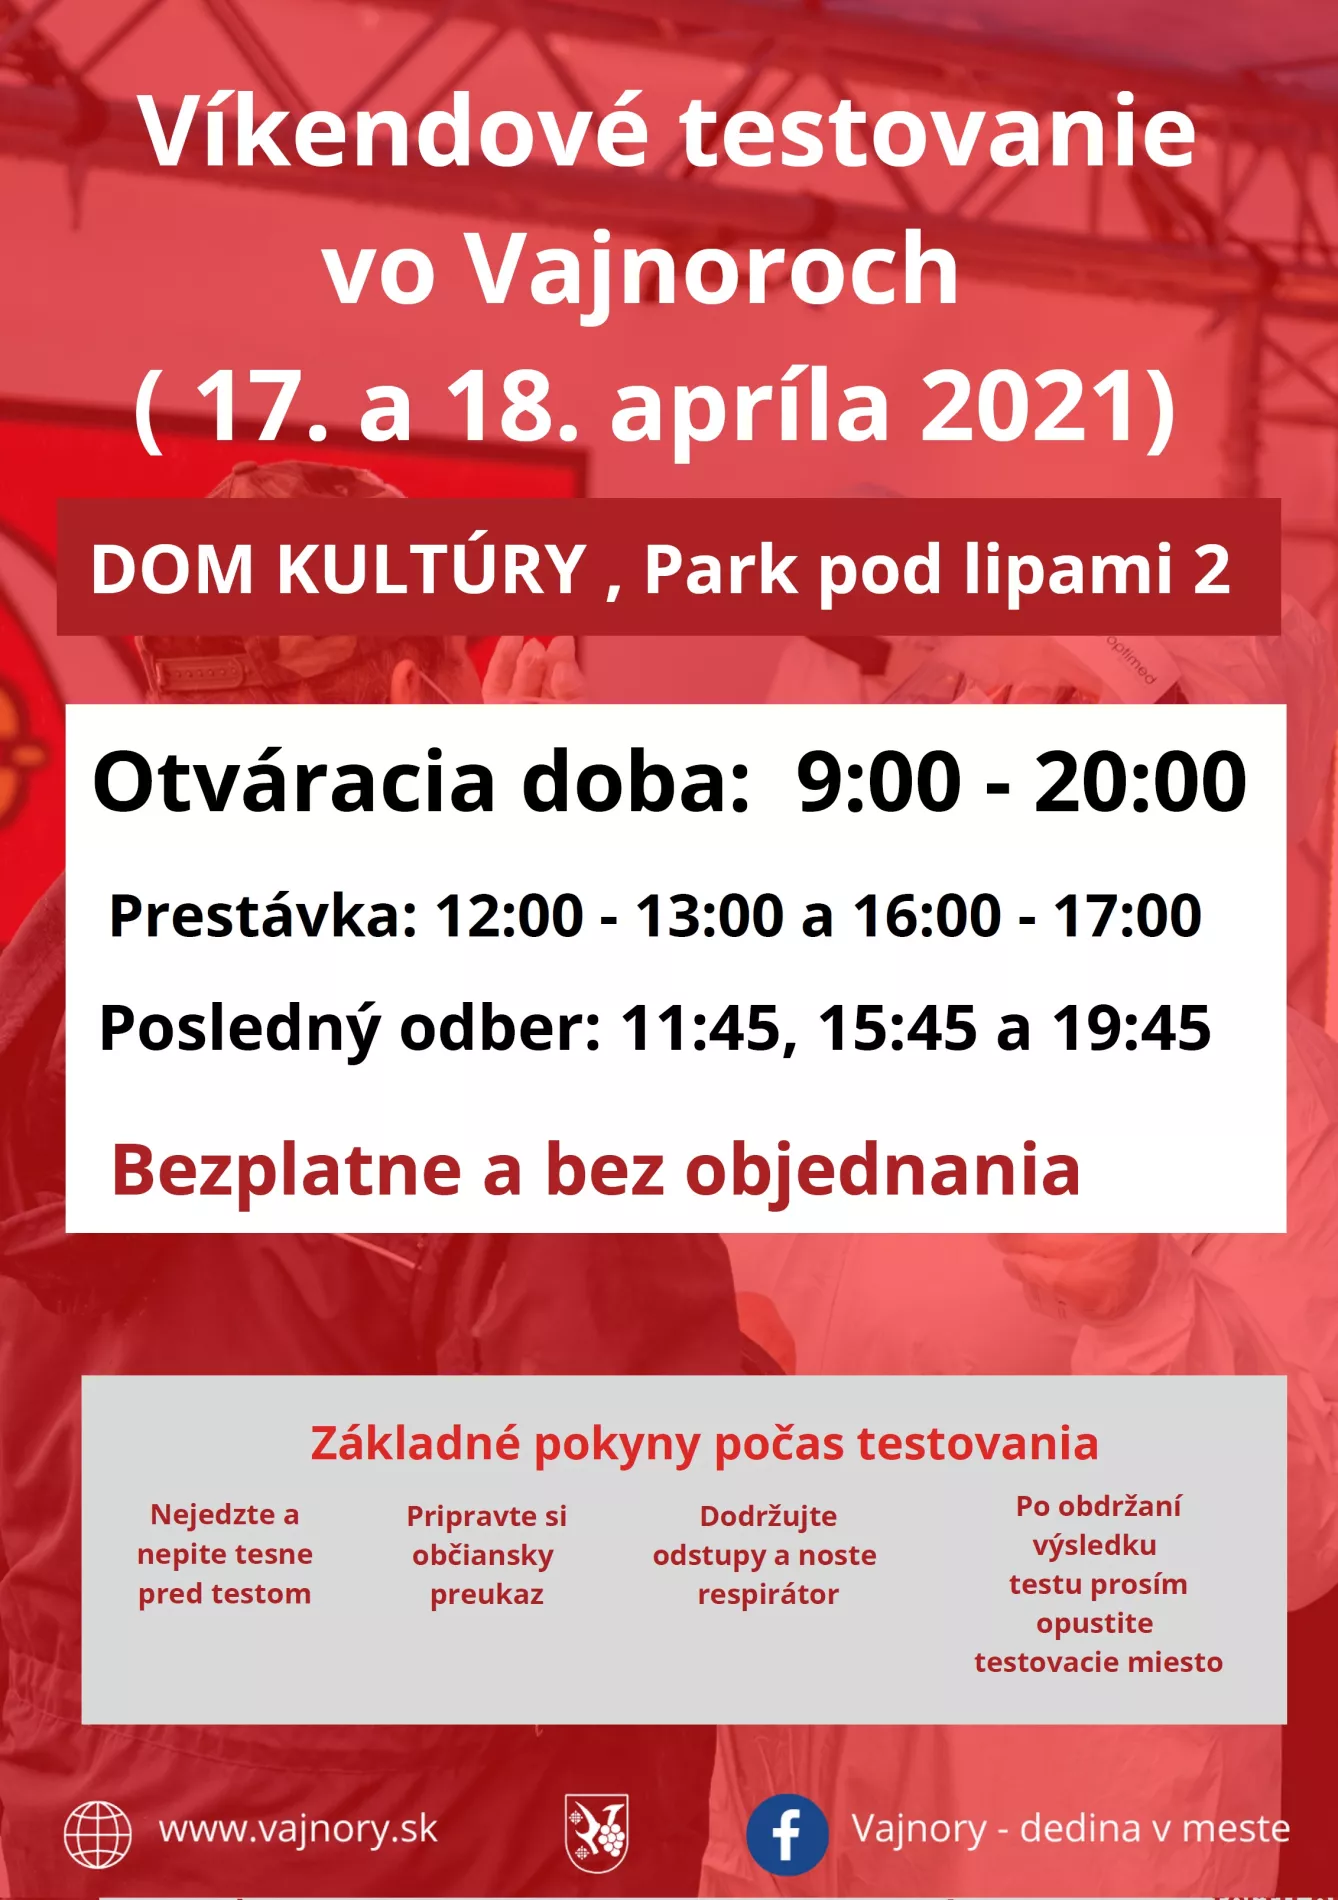  Testovanie vo Vajnoroch bez objednania cez víkend 17.-18.4.2021